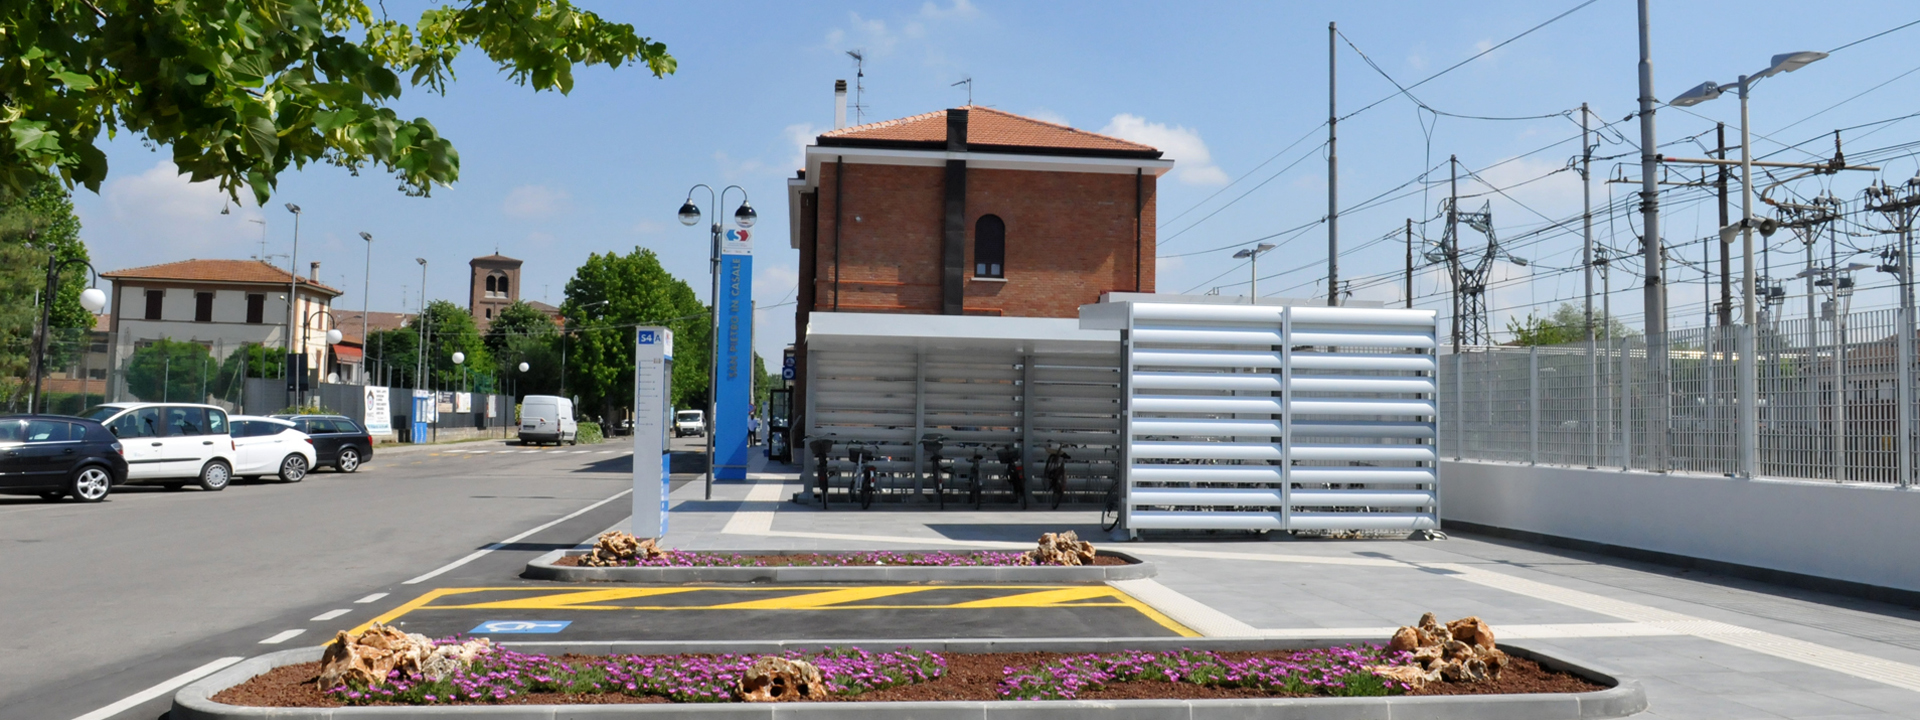 Foto: Stazione ferroviaria di San Pietro in Casale - Archivio Città metropolitana di Bologna